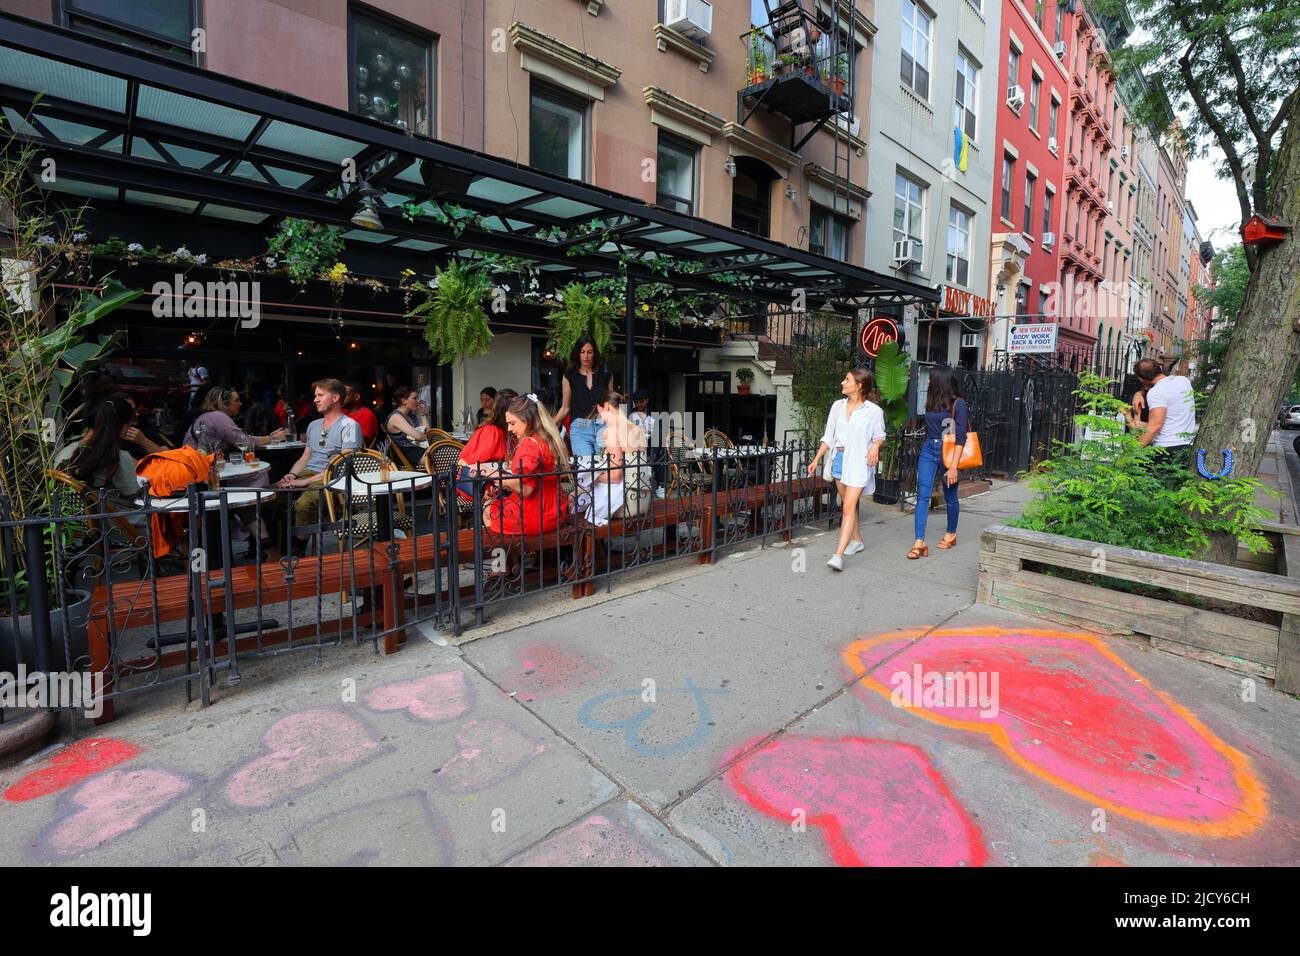 Marylou, 41 St Marks PL, New York, NYC Foto von einem französischen Bistro-Restaurant im East Village-Viertel in Manhattan. Stockfoto